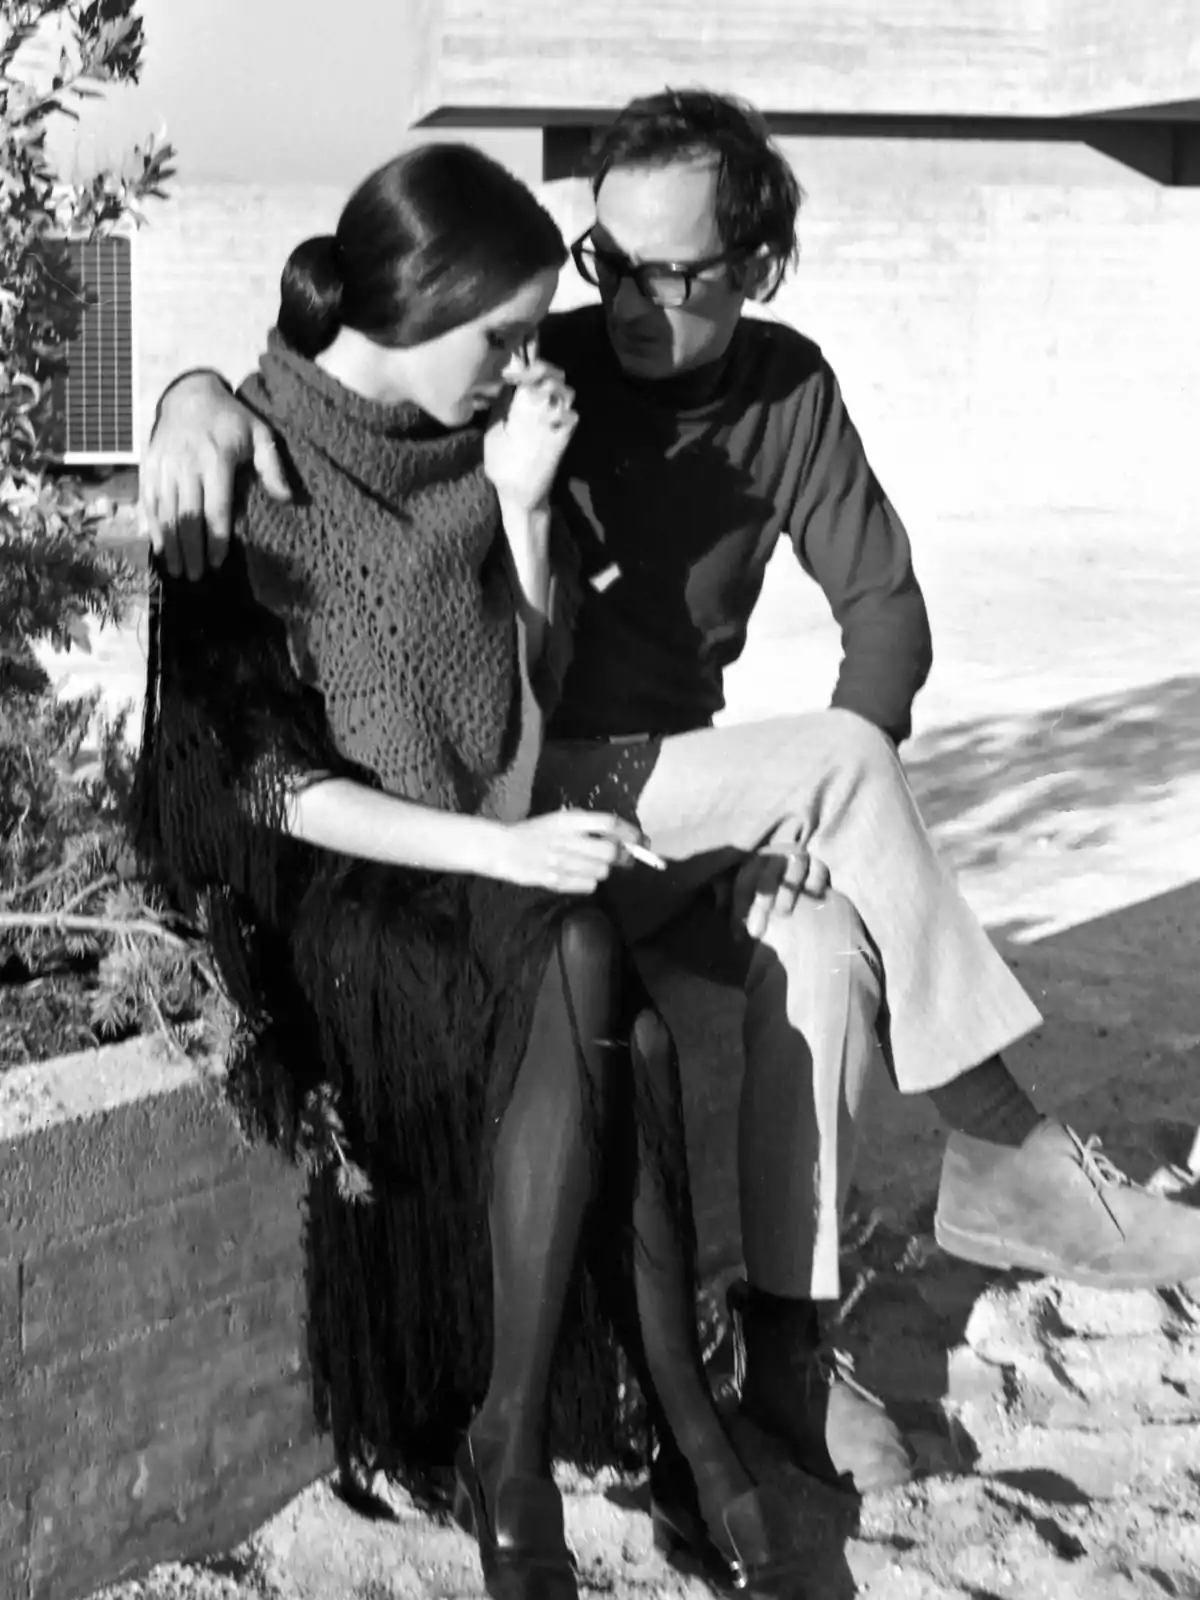 Una mujer y un hombre sentados en un muro de concreto, la mujer está fumando y el hombre la abraza mientras conversan.